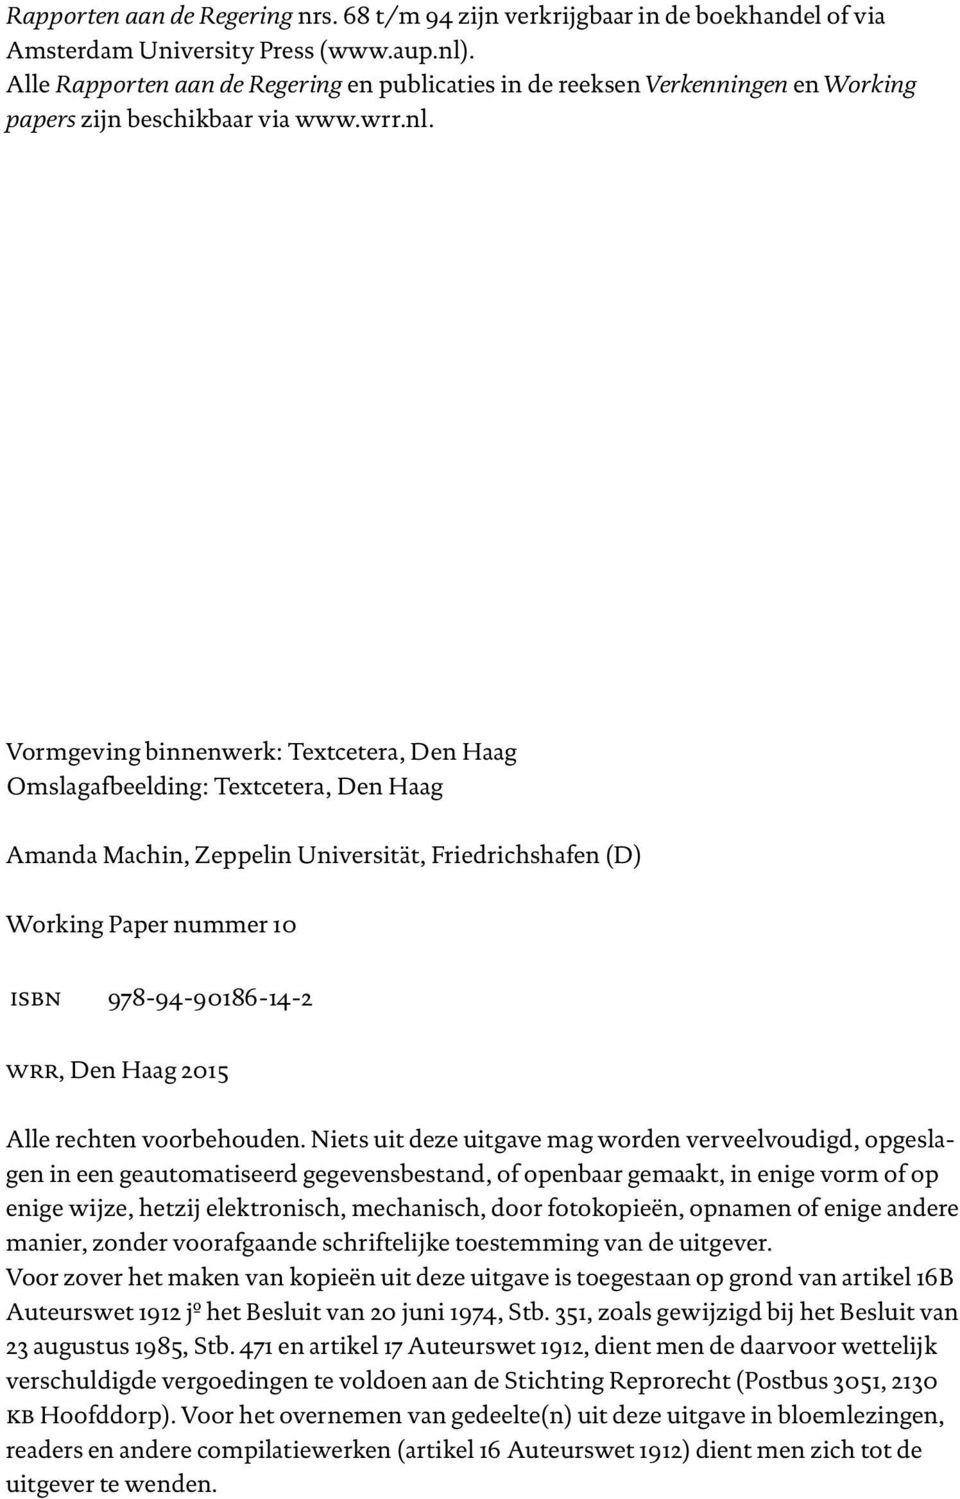 Vormgeving binnenwerk: Textcetera, Den Haag Omslagafbeelding: Textcetera, Den Haag Amanda Machin, Zeppelin Universität, Friedrichshafen (D) Working Paper nummer 10 isbn 978-94-90186-14-2 wrr, Den